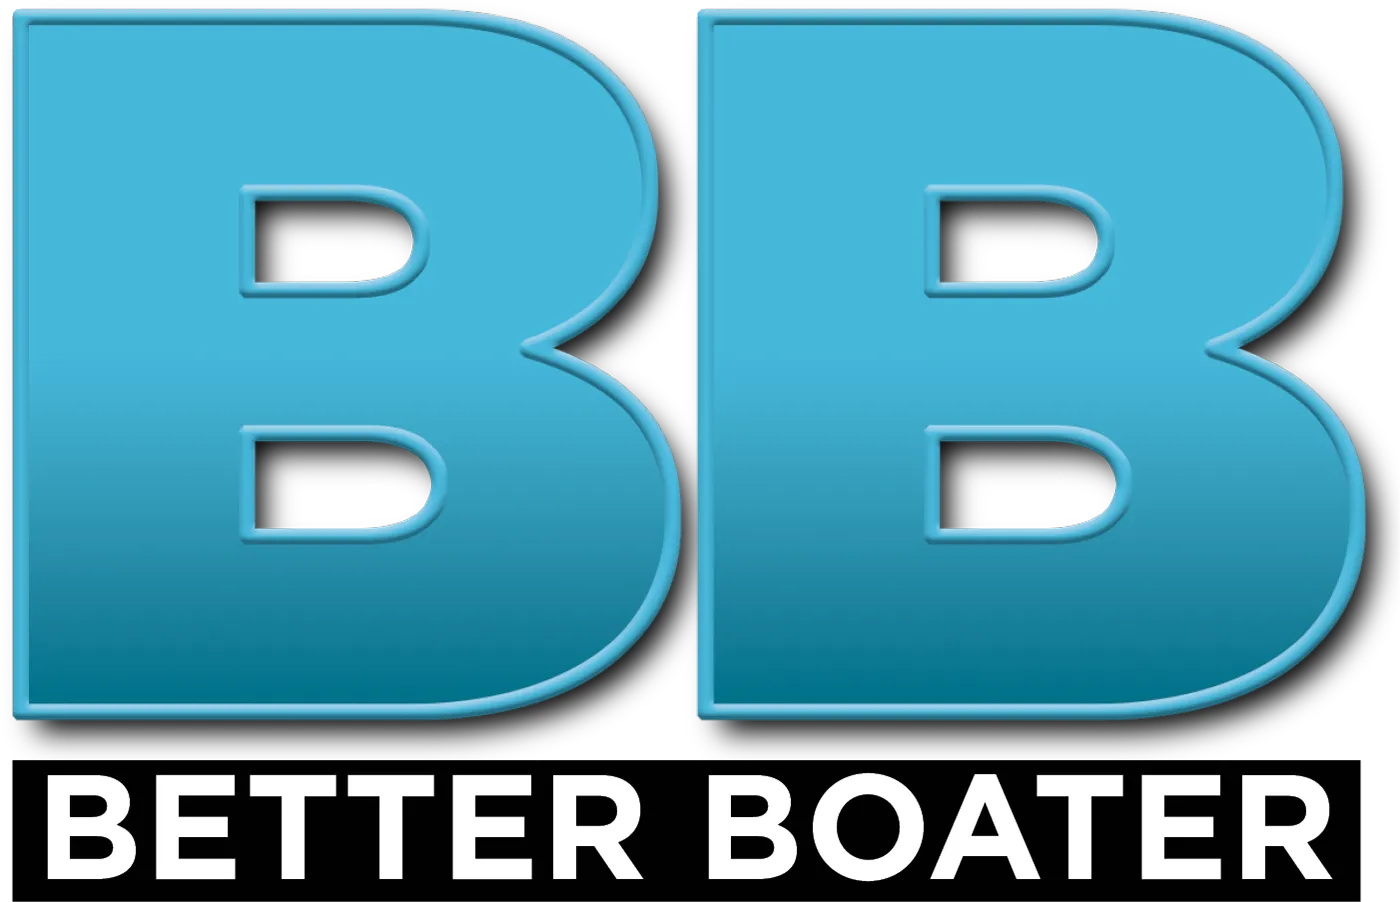 BB: Better Boater